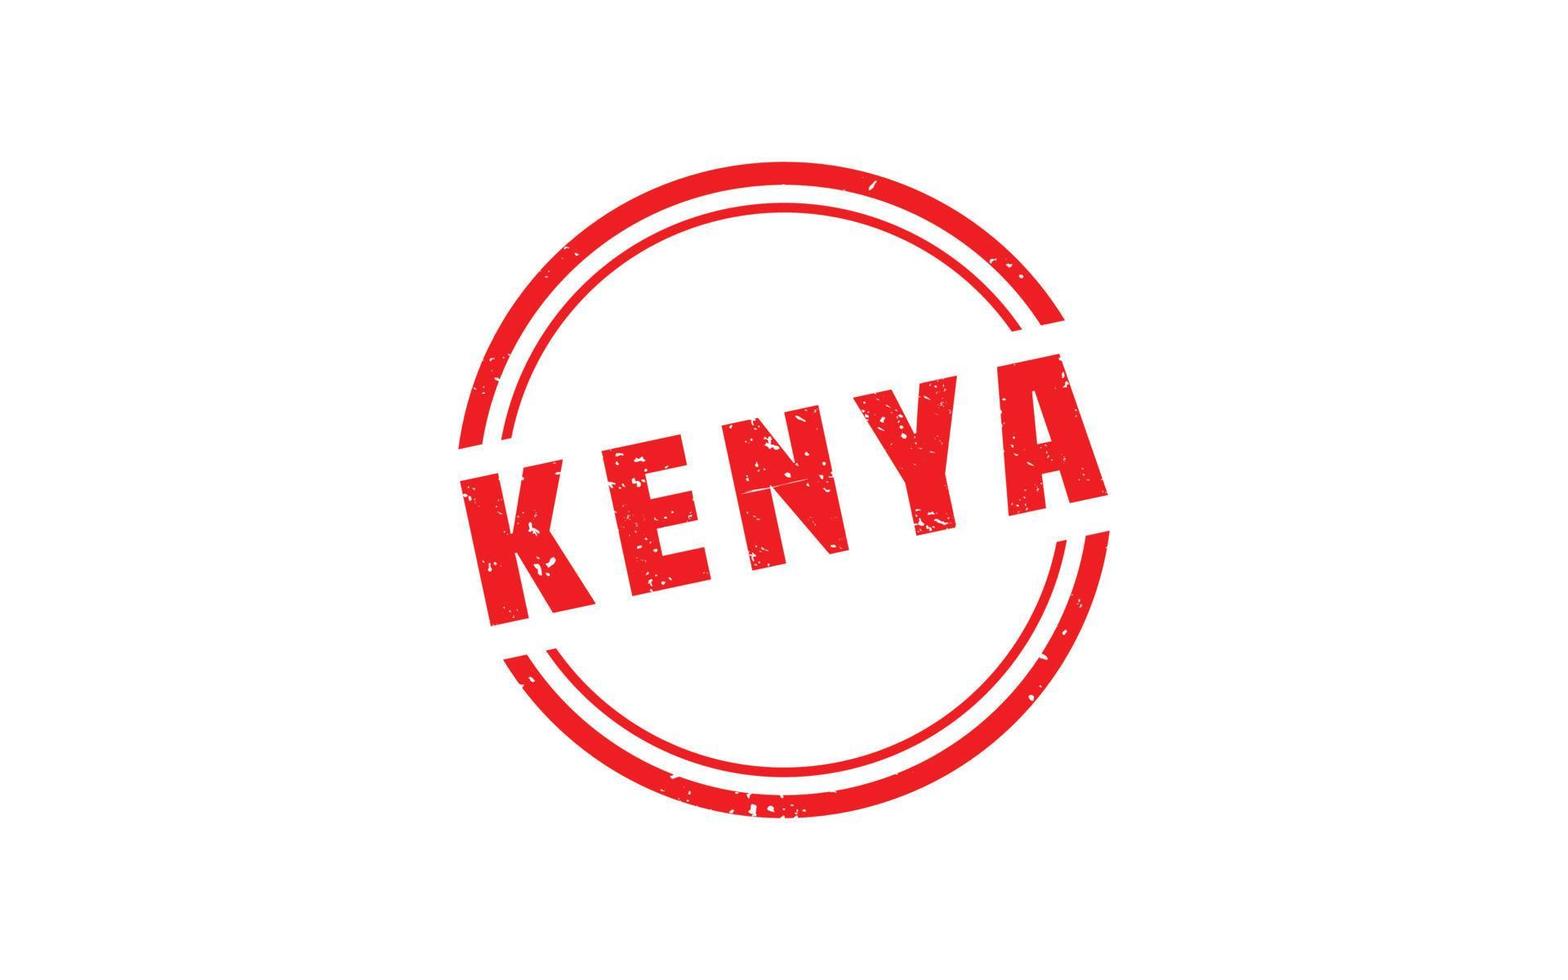 goma de sello de kenia con estilo grunge sobre fondo blanco vector